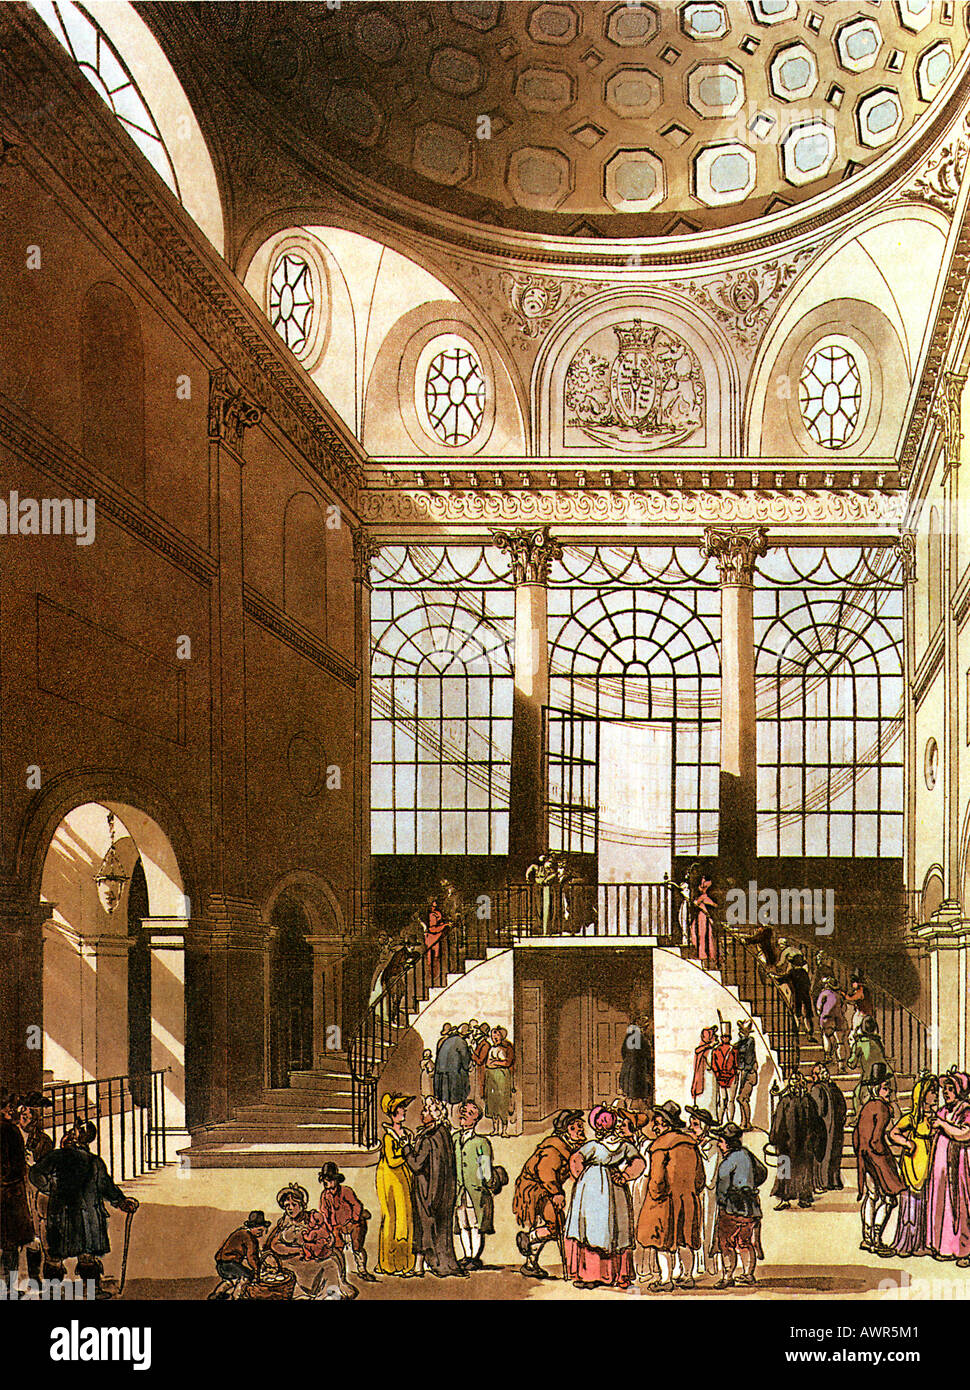 Chambre à partir de 1805 séances de Clerkenwell le microcosme de London Illustrated par Rowlandson et Pugin Banque D'Images